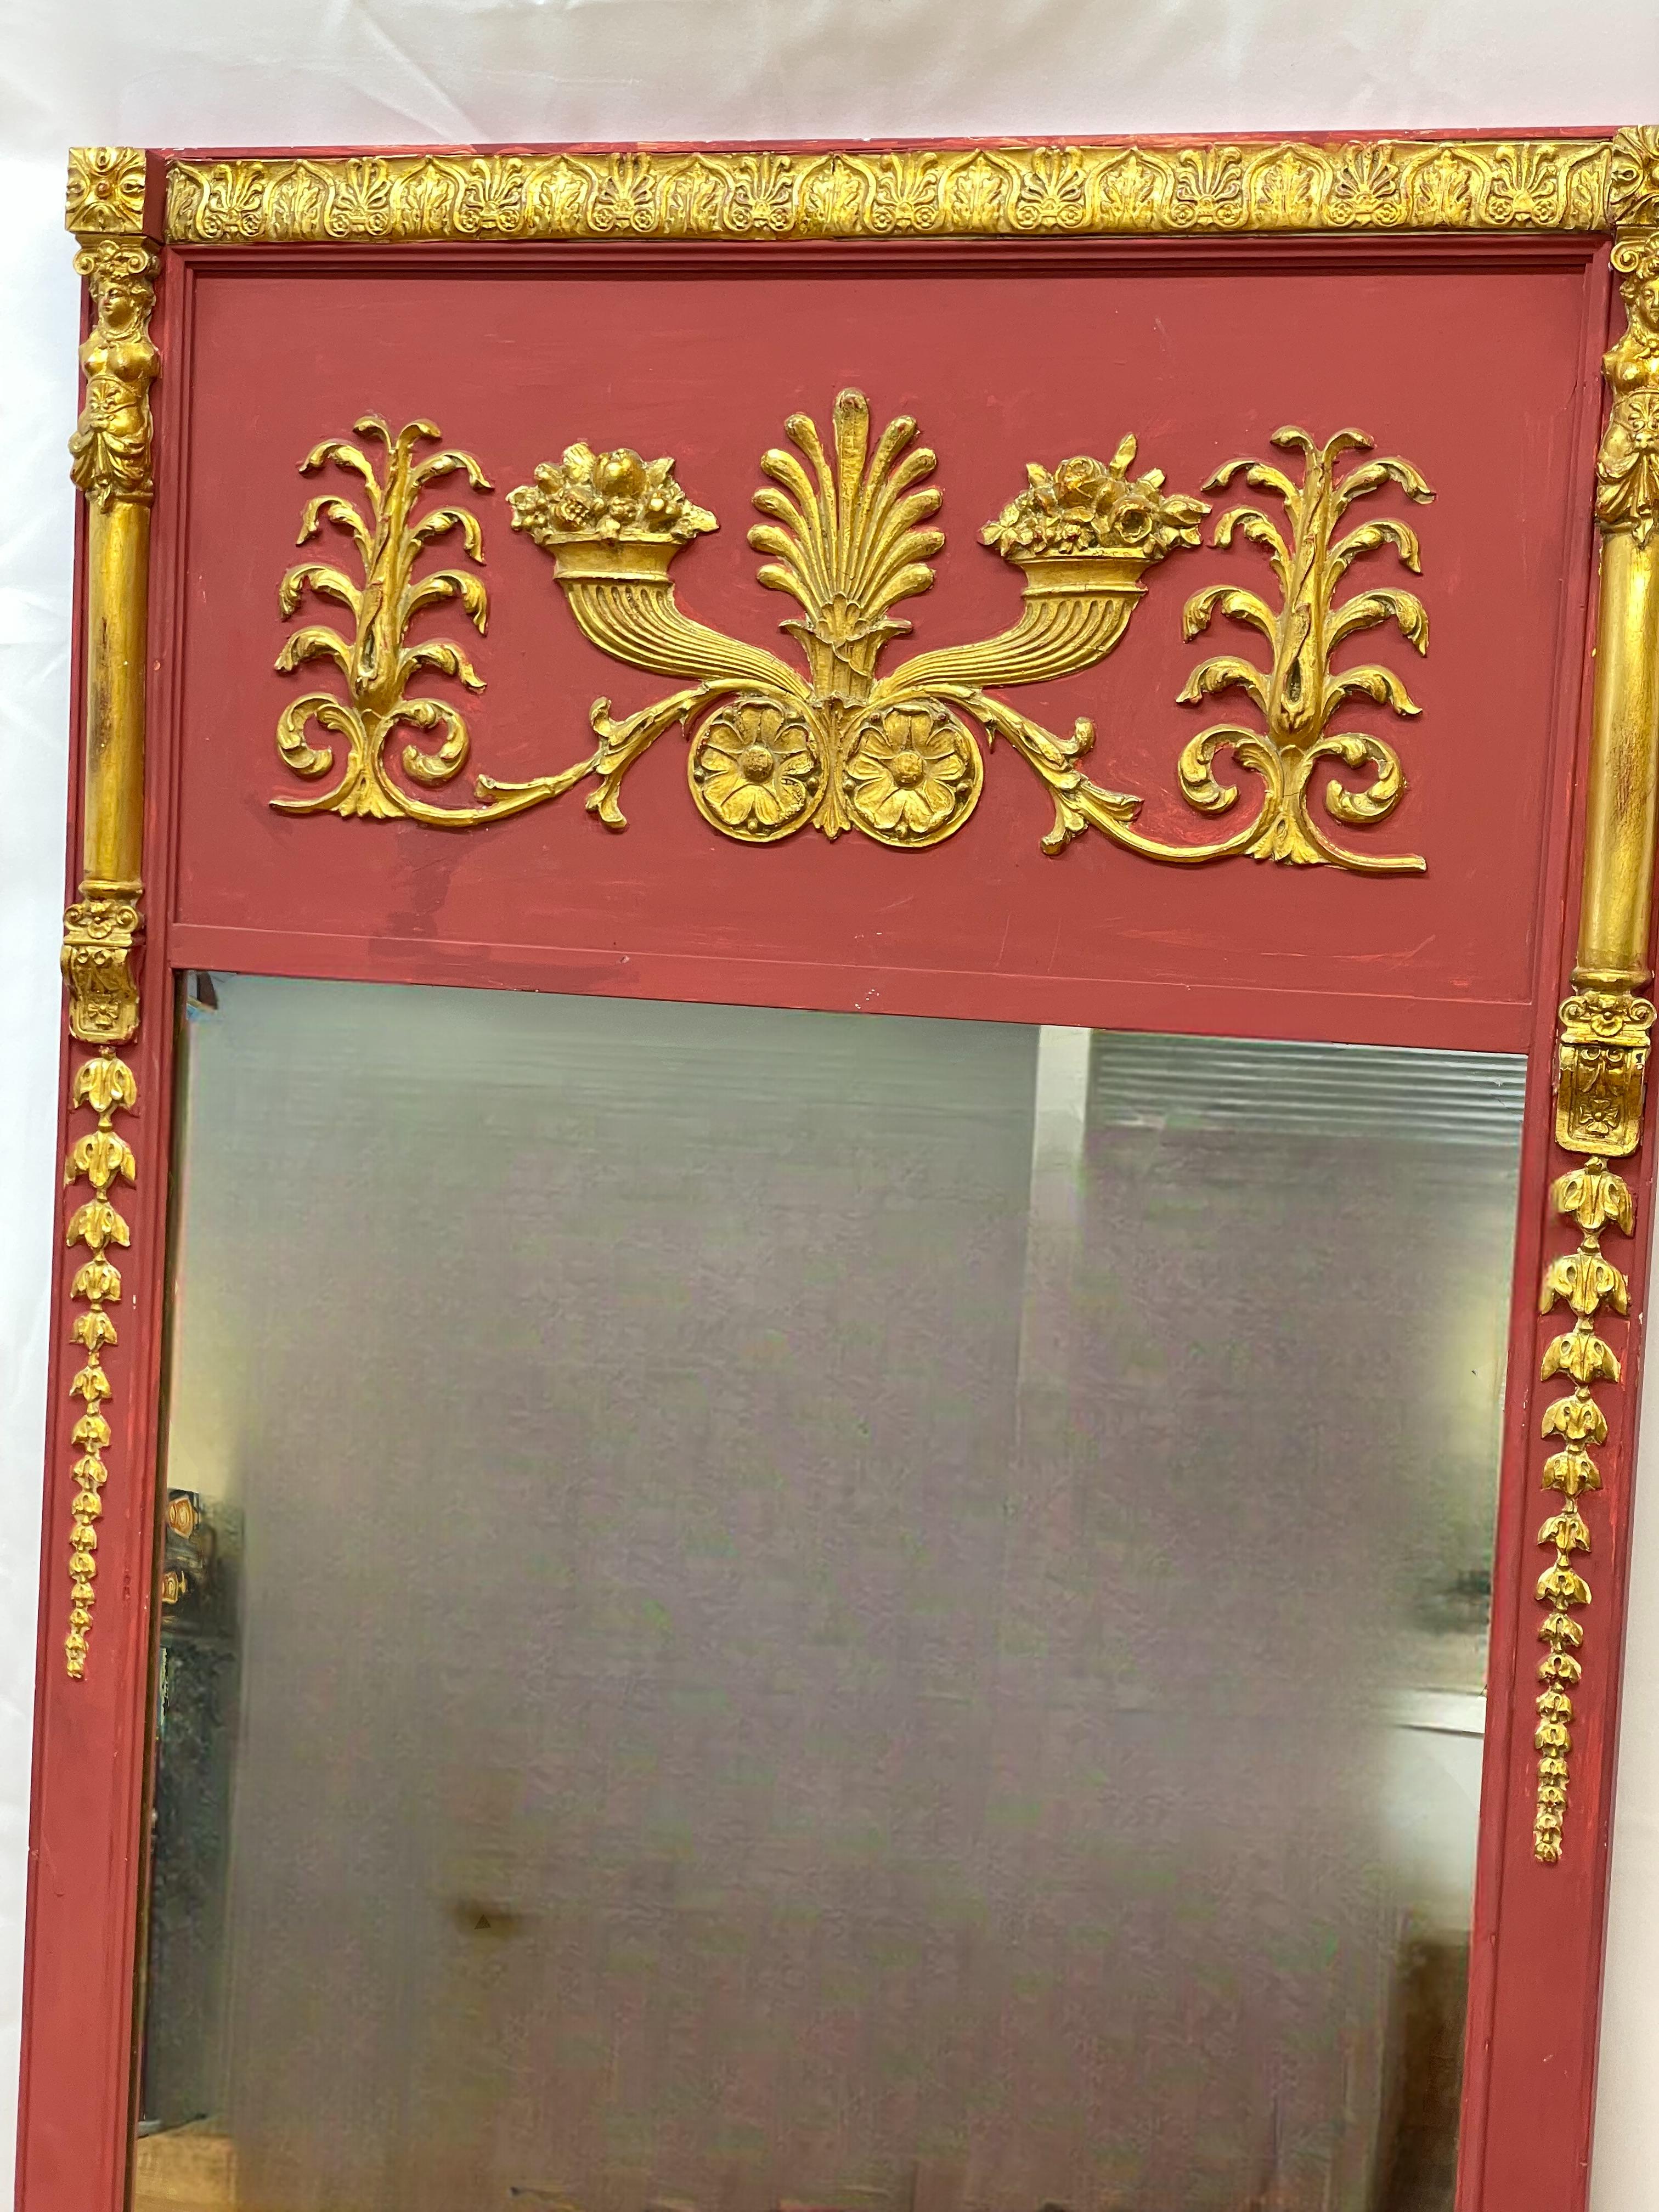 Miroir néoclassique doré et peint en rouge avec motif de corne d'abondance

28x1x52